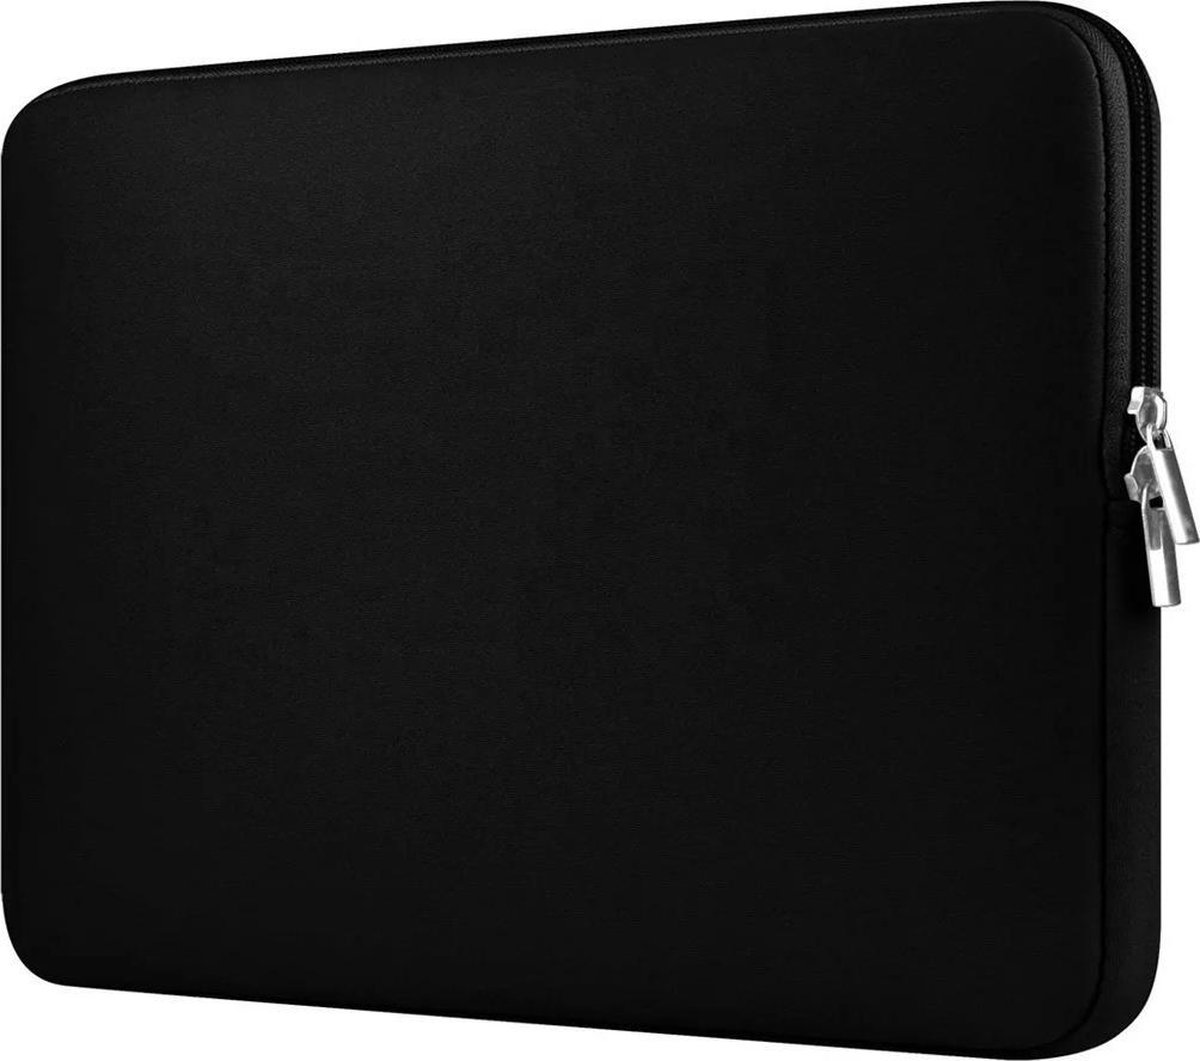 Laptoptas – case – 15,6 inch – stevige kwaliteit – soft touch – kleur zwart - unisex - spatwaterbestending